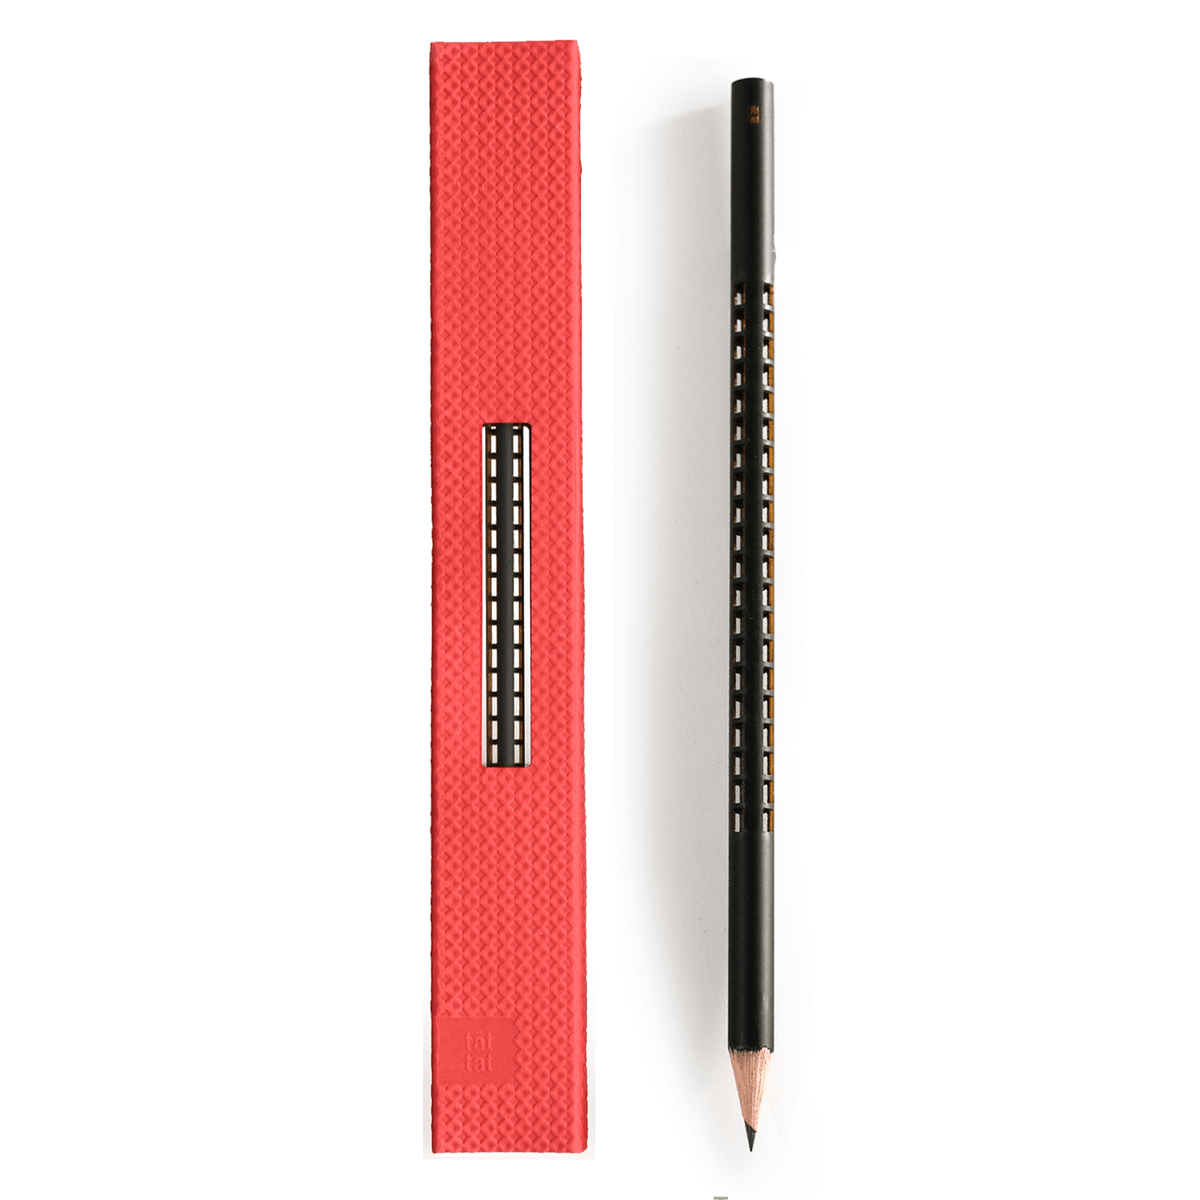 Bleistift, Turm, in roter Geschenksverpackung